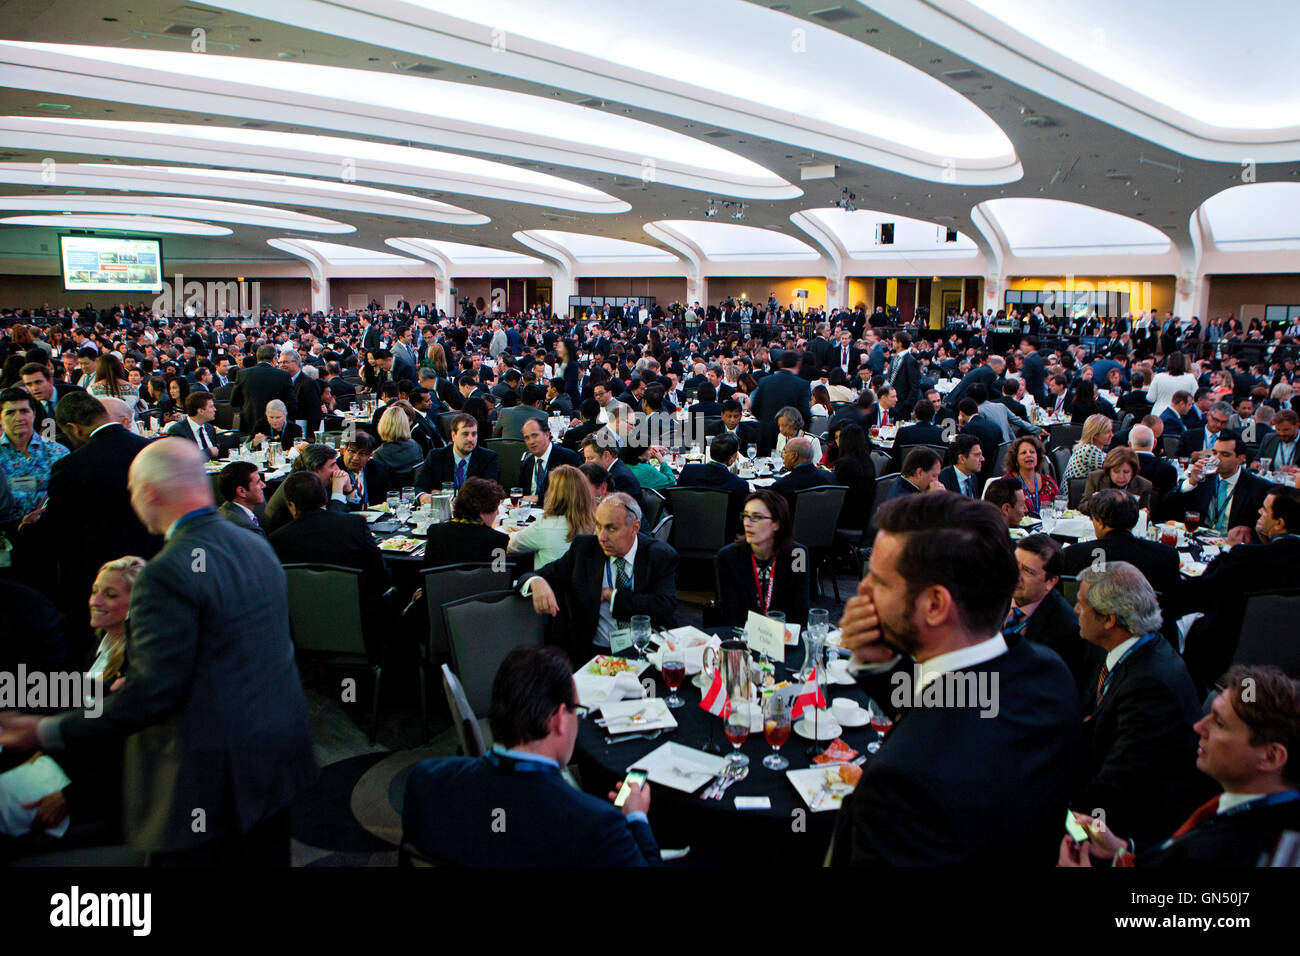 Los invitados sentados en mesas durante un evento en una gran sala de banquetes en el Hotel Hilton Washington DC, EE.UU. Foto de stock